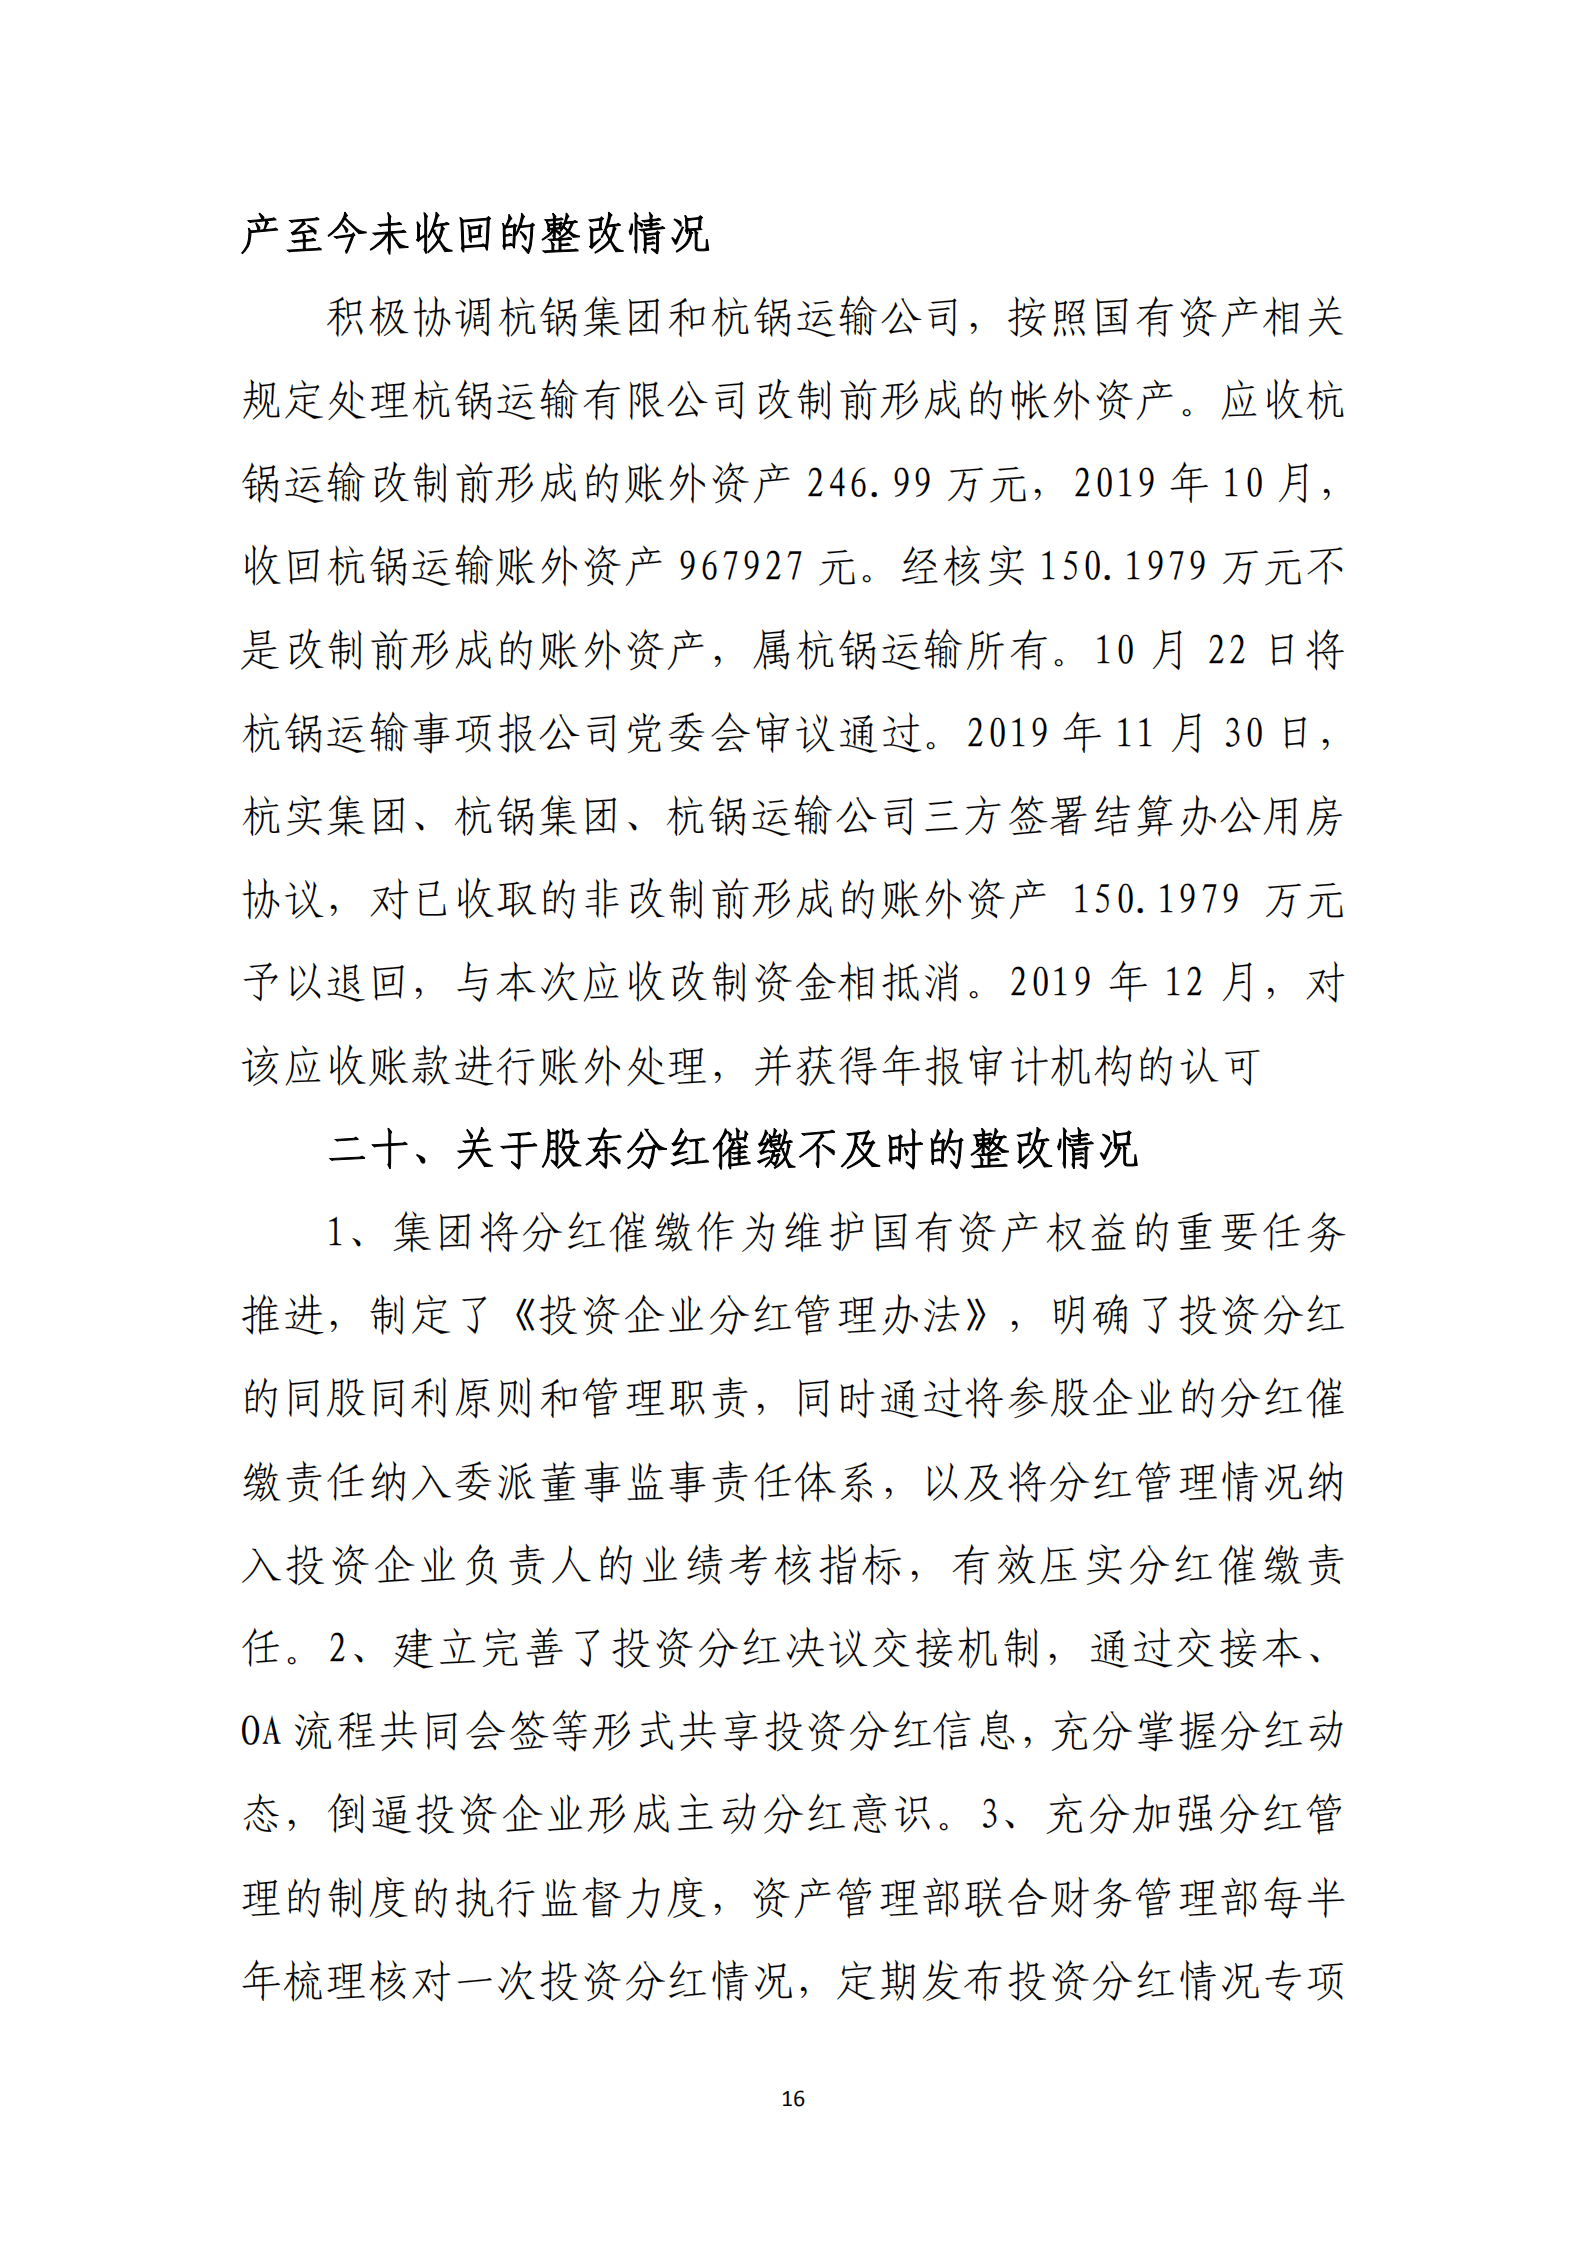 乐虎国际游戏官网党委关于巡察整改情况的通报_15.png